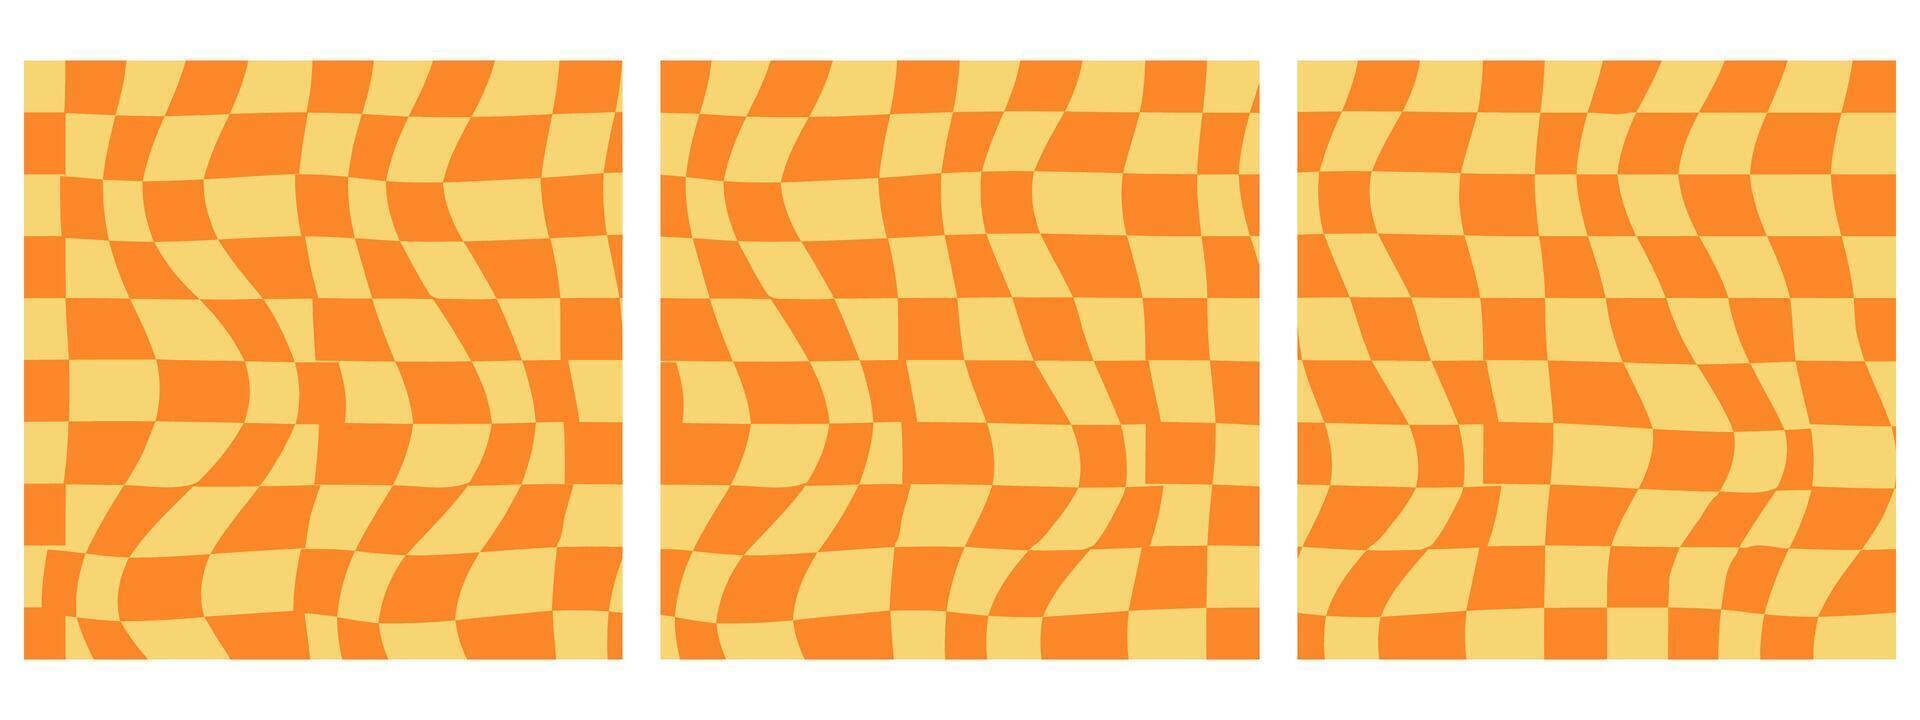 conjunto do quadrado abstrato fundo apresentando uma psicodélico groovy tabuleiro de damas Projeto dentro Década de 1970 hippie retro estilo. vetor padronizar pronto para usar. amarelo e laranja cores